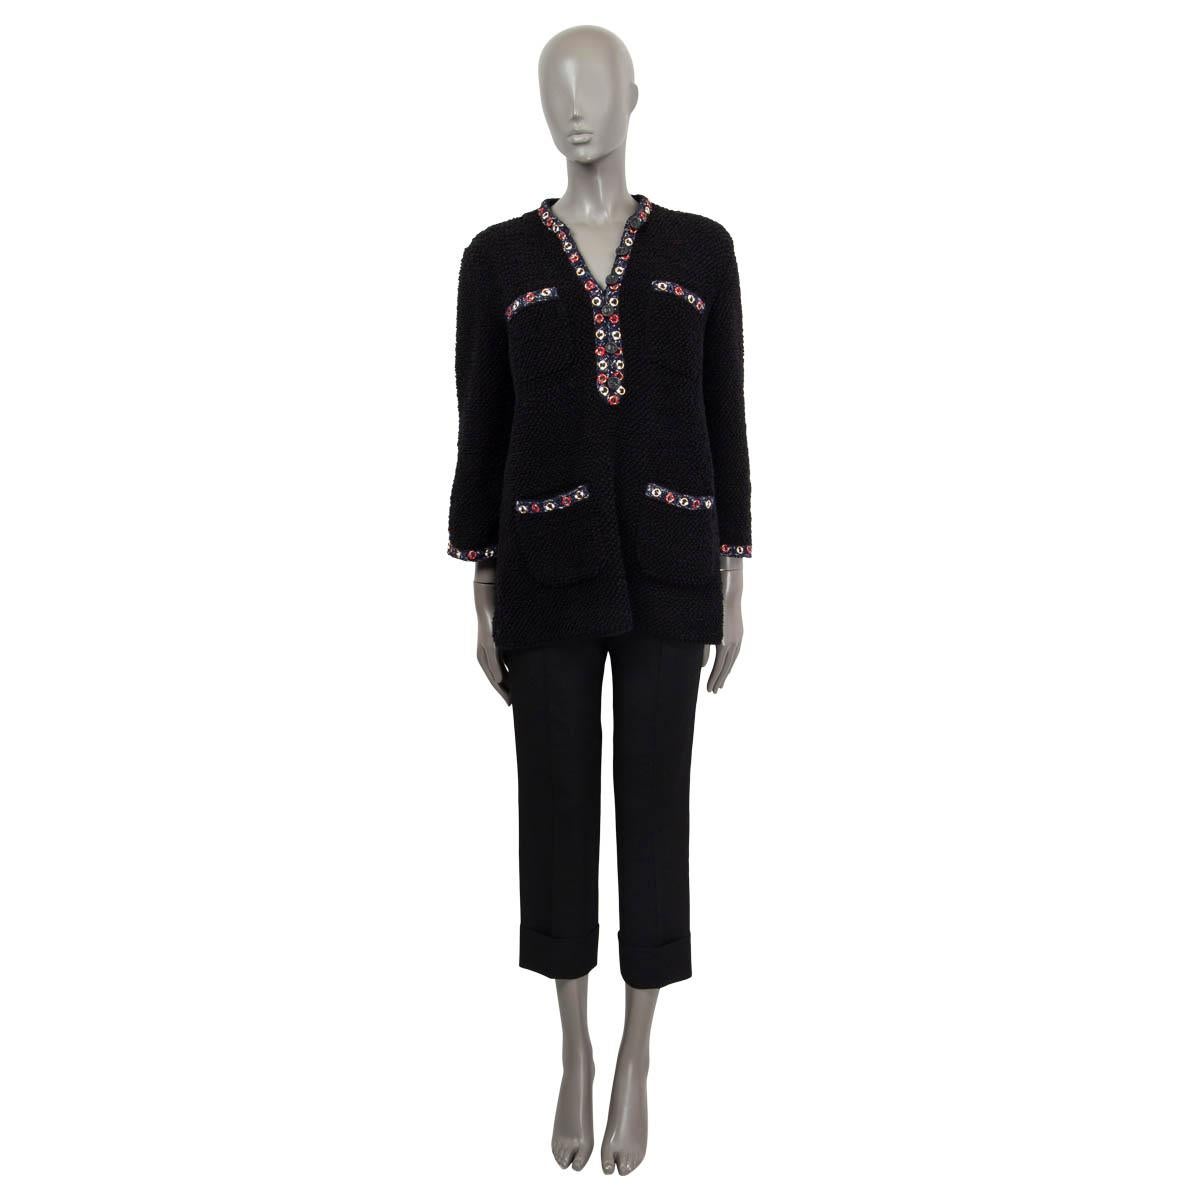 100% authentique Chanel 2019 La Pausa chunky knit tunic en coton noir (77%), polyamide (19%) et polyester (4%). Il comporte quatre poches plaquées sur le devant et est orné d'une bordure contrastée en marine, rouge et blanc. S'ouvre avec les boutons